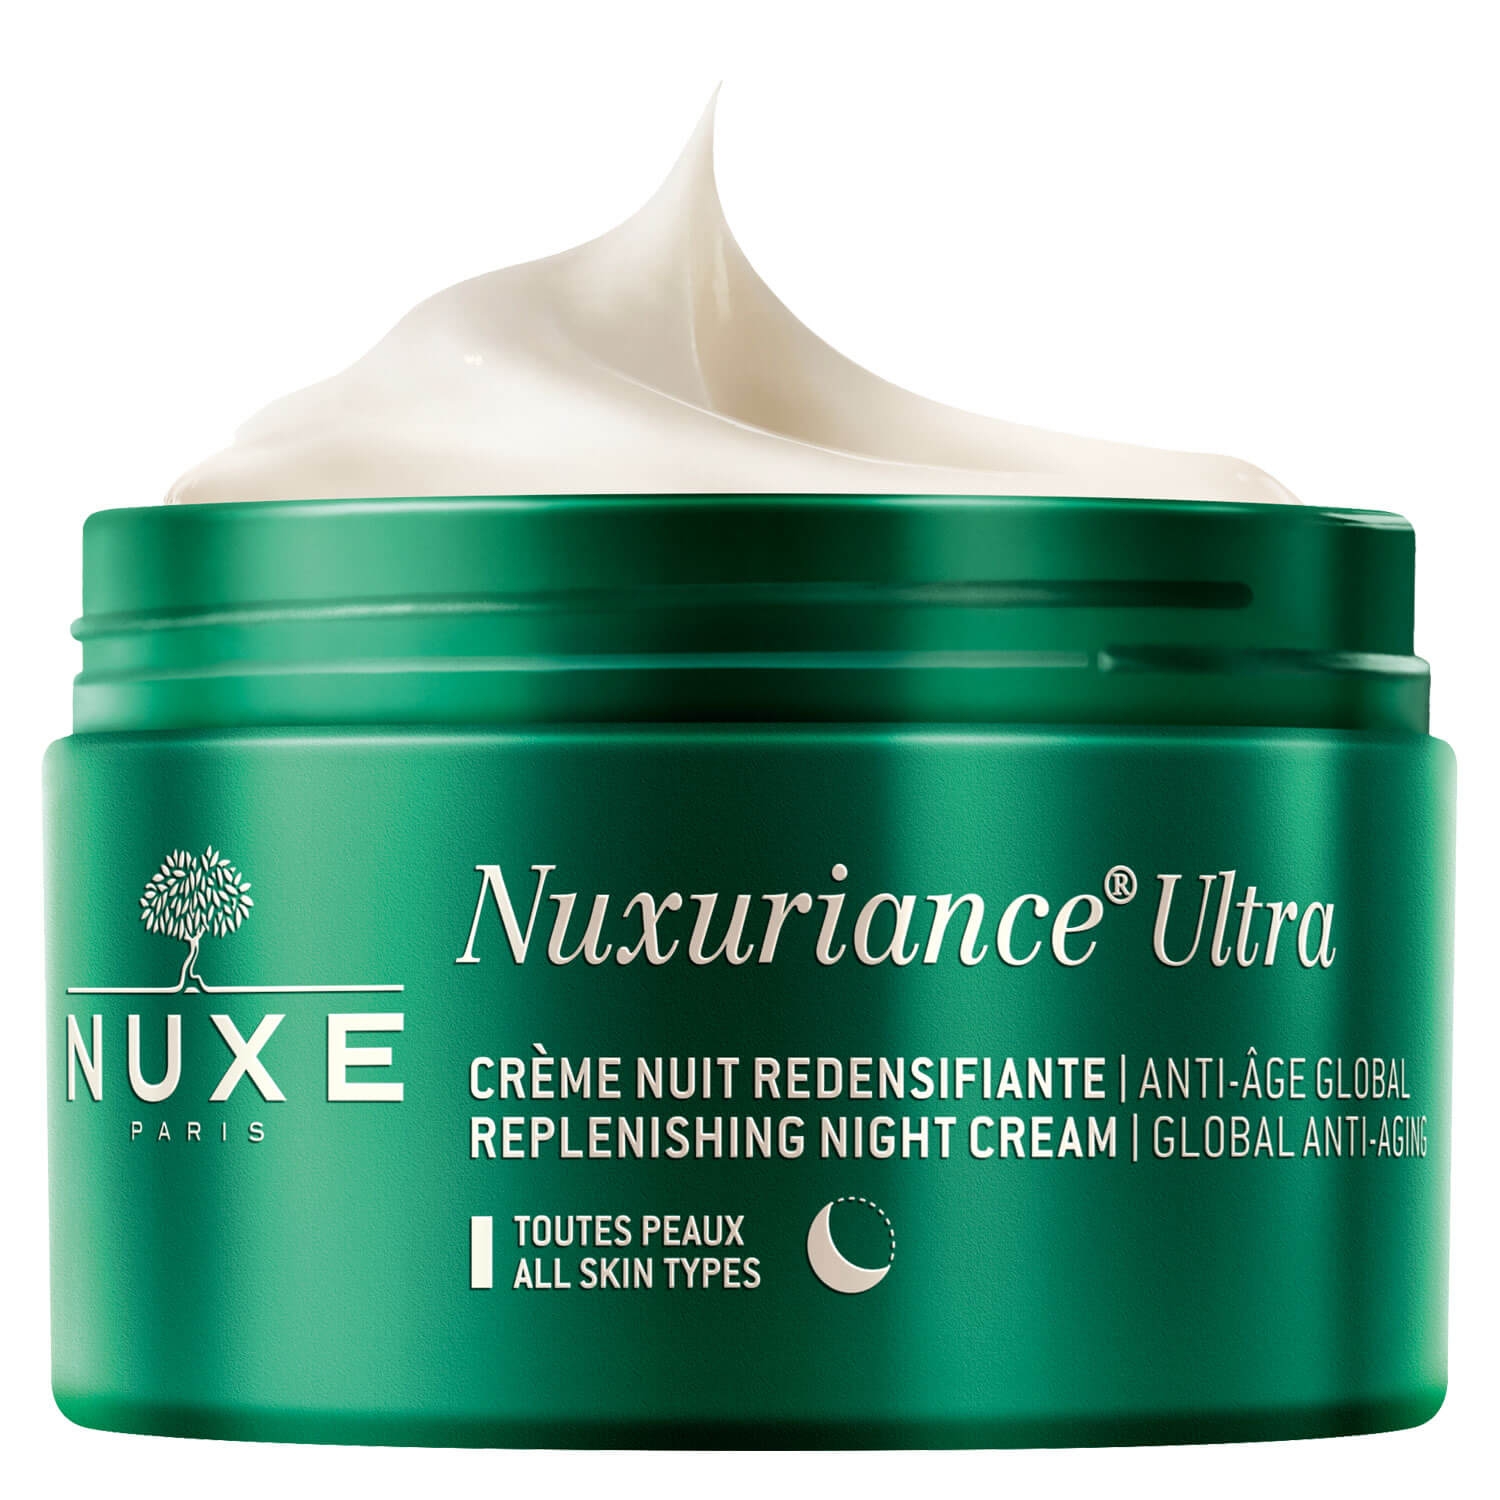 Produktbild von Nuxuriance Ultra - Crème Nuit Redensifiante